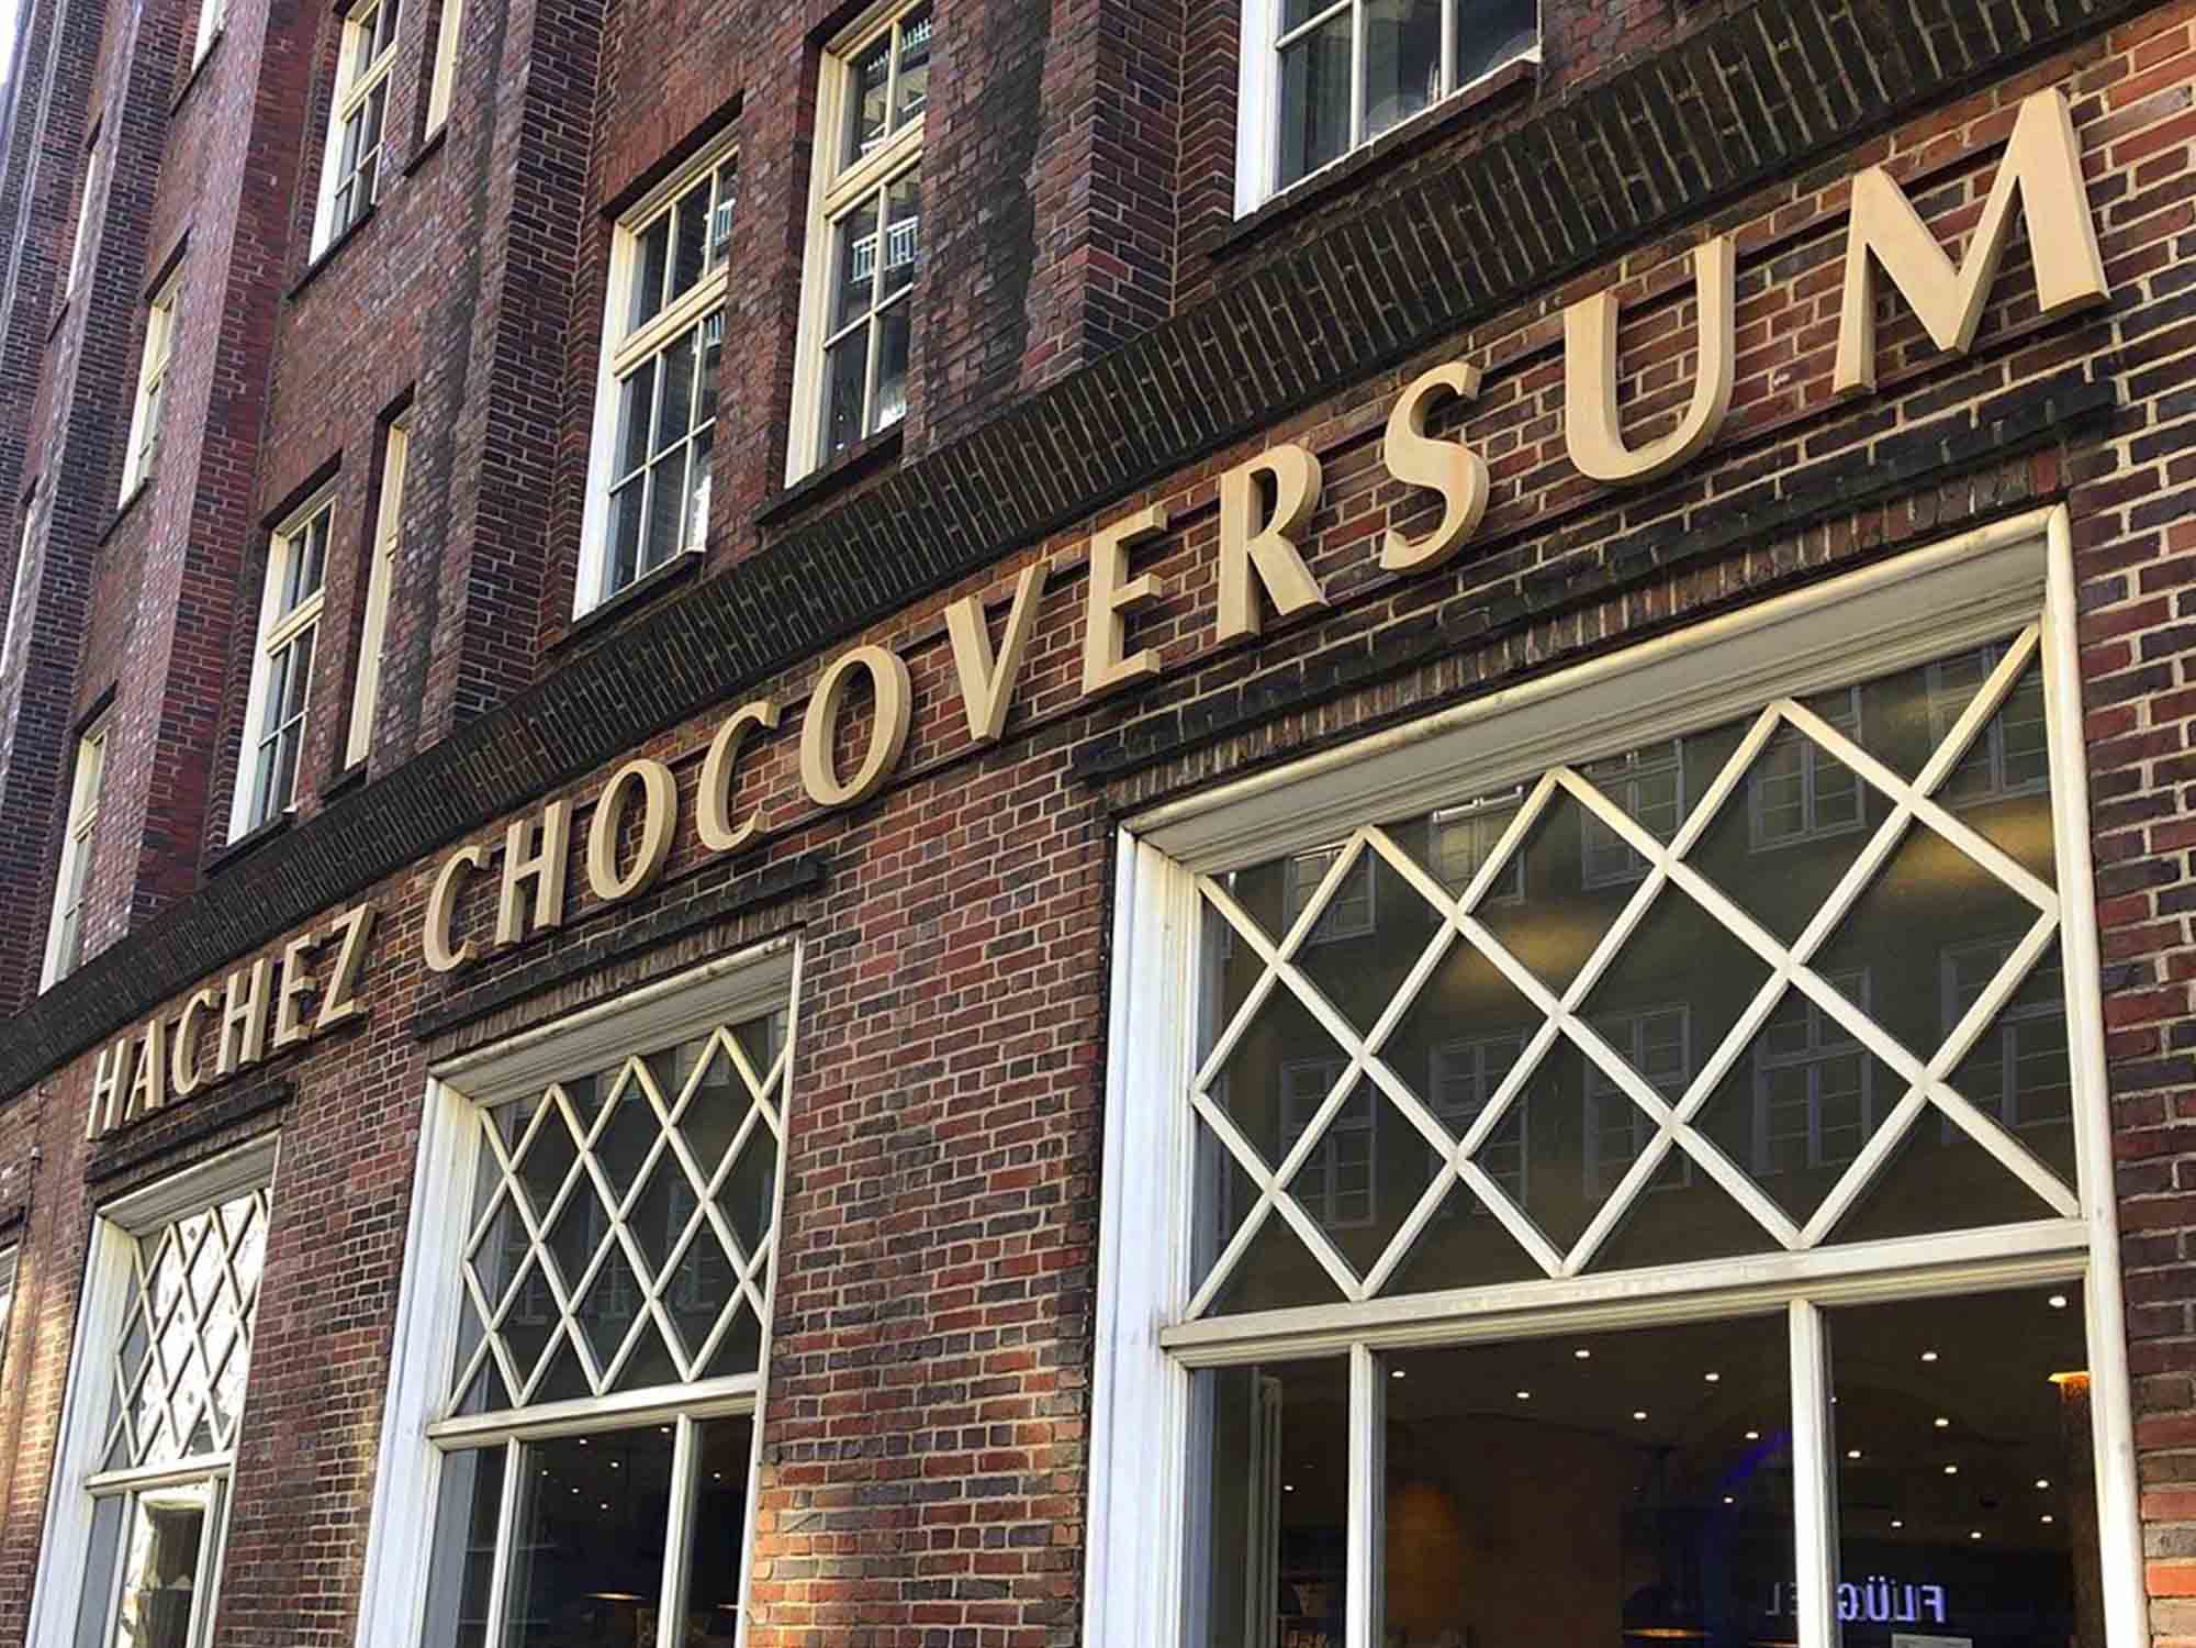 The Best Hamburg Attractions - Chocoversum Chocolate Museum